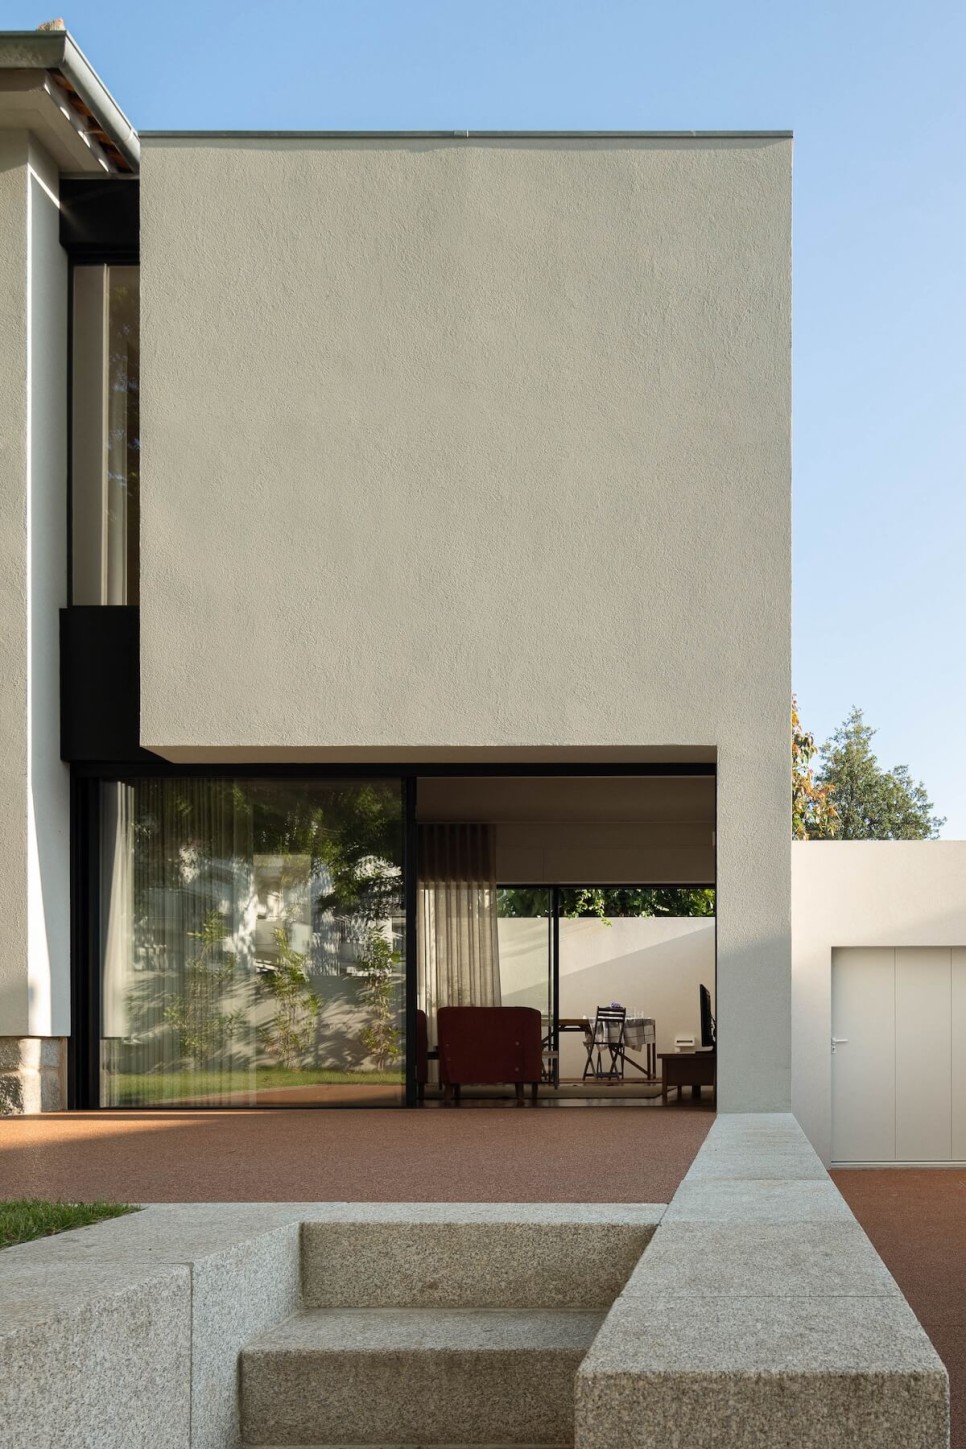 합리적인 구조로 증·개축을 한 길모퉁이 반 단독주택, IMLA House by Luppa Arquitectos